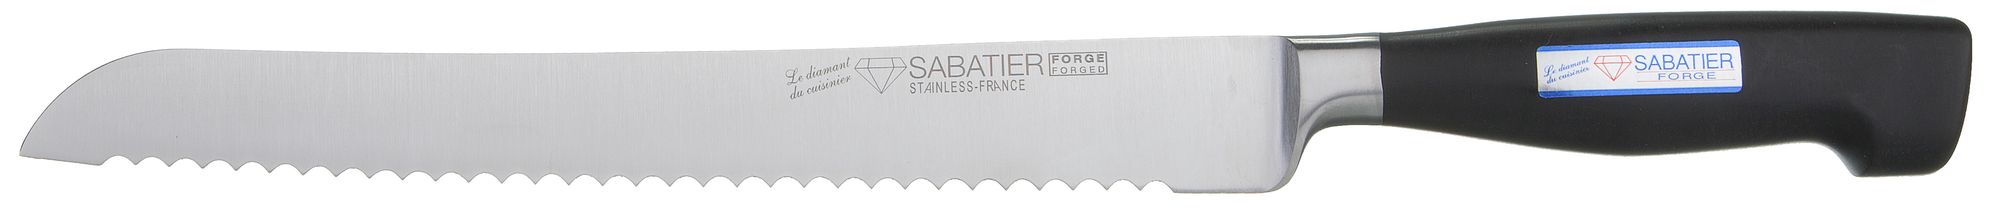 Diamant Sabatier Brotmesser Forge 22 cm